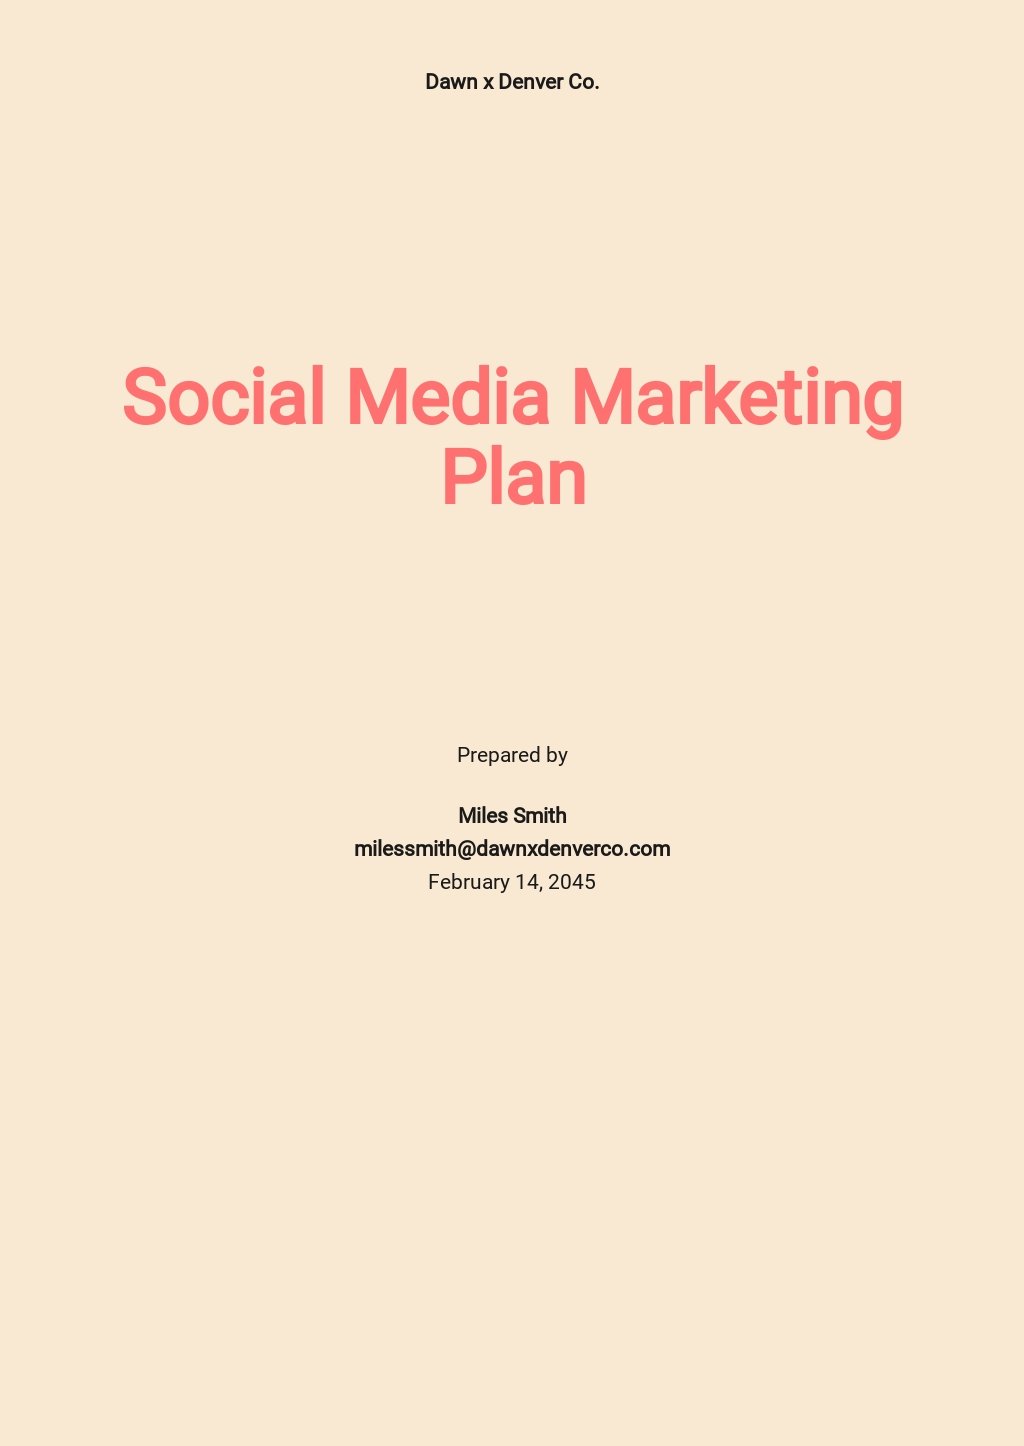 plan-de-marketing-en-redes-sociales-venngage